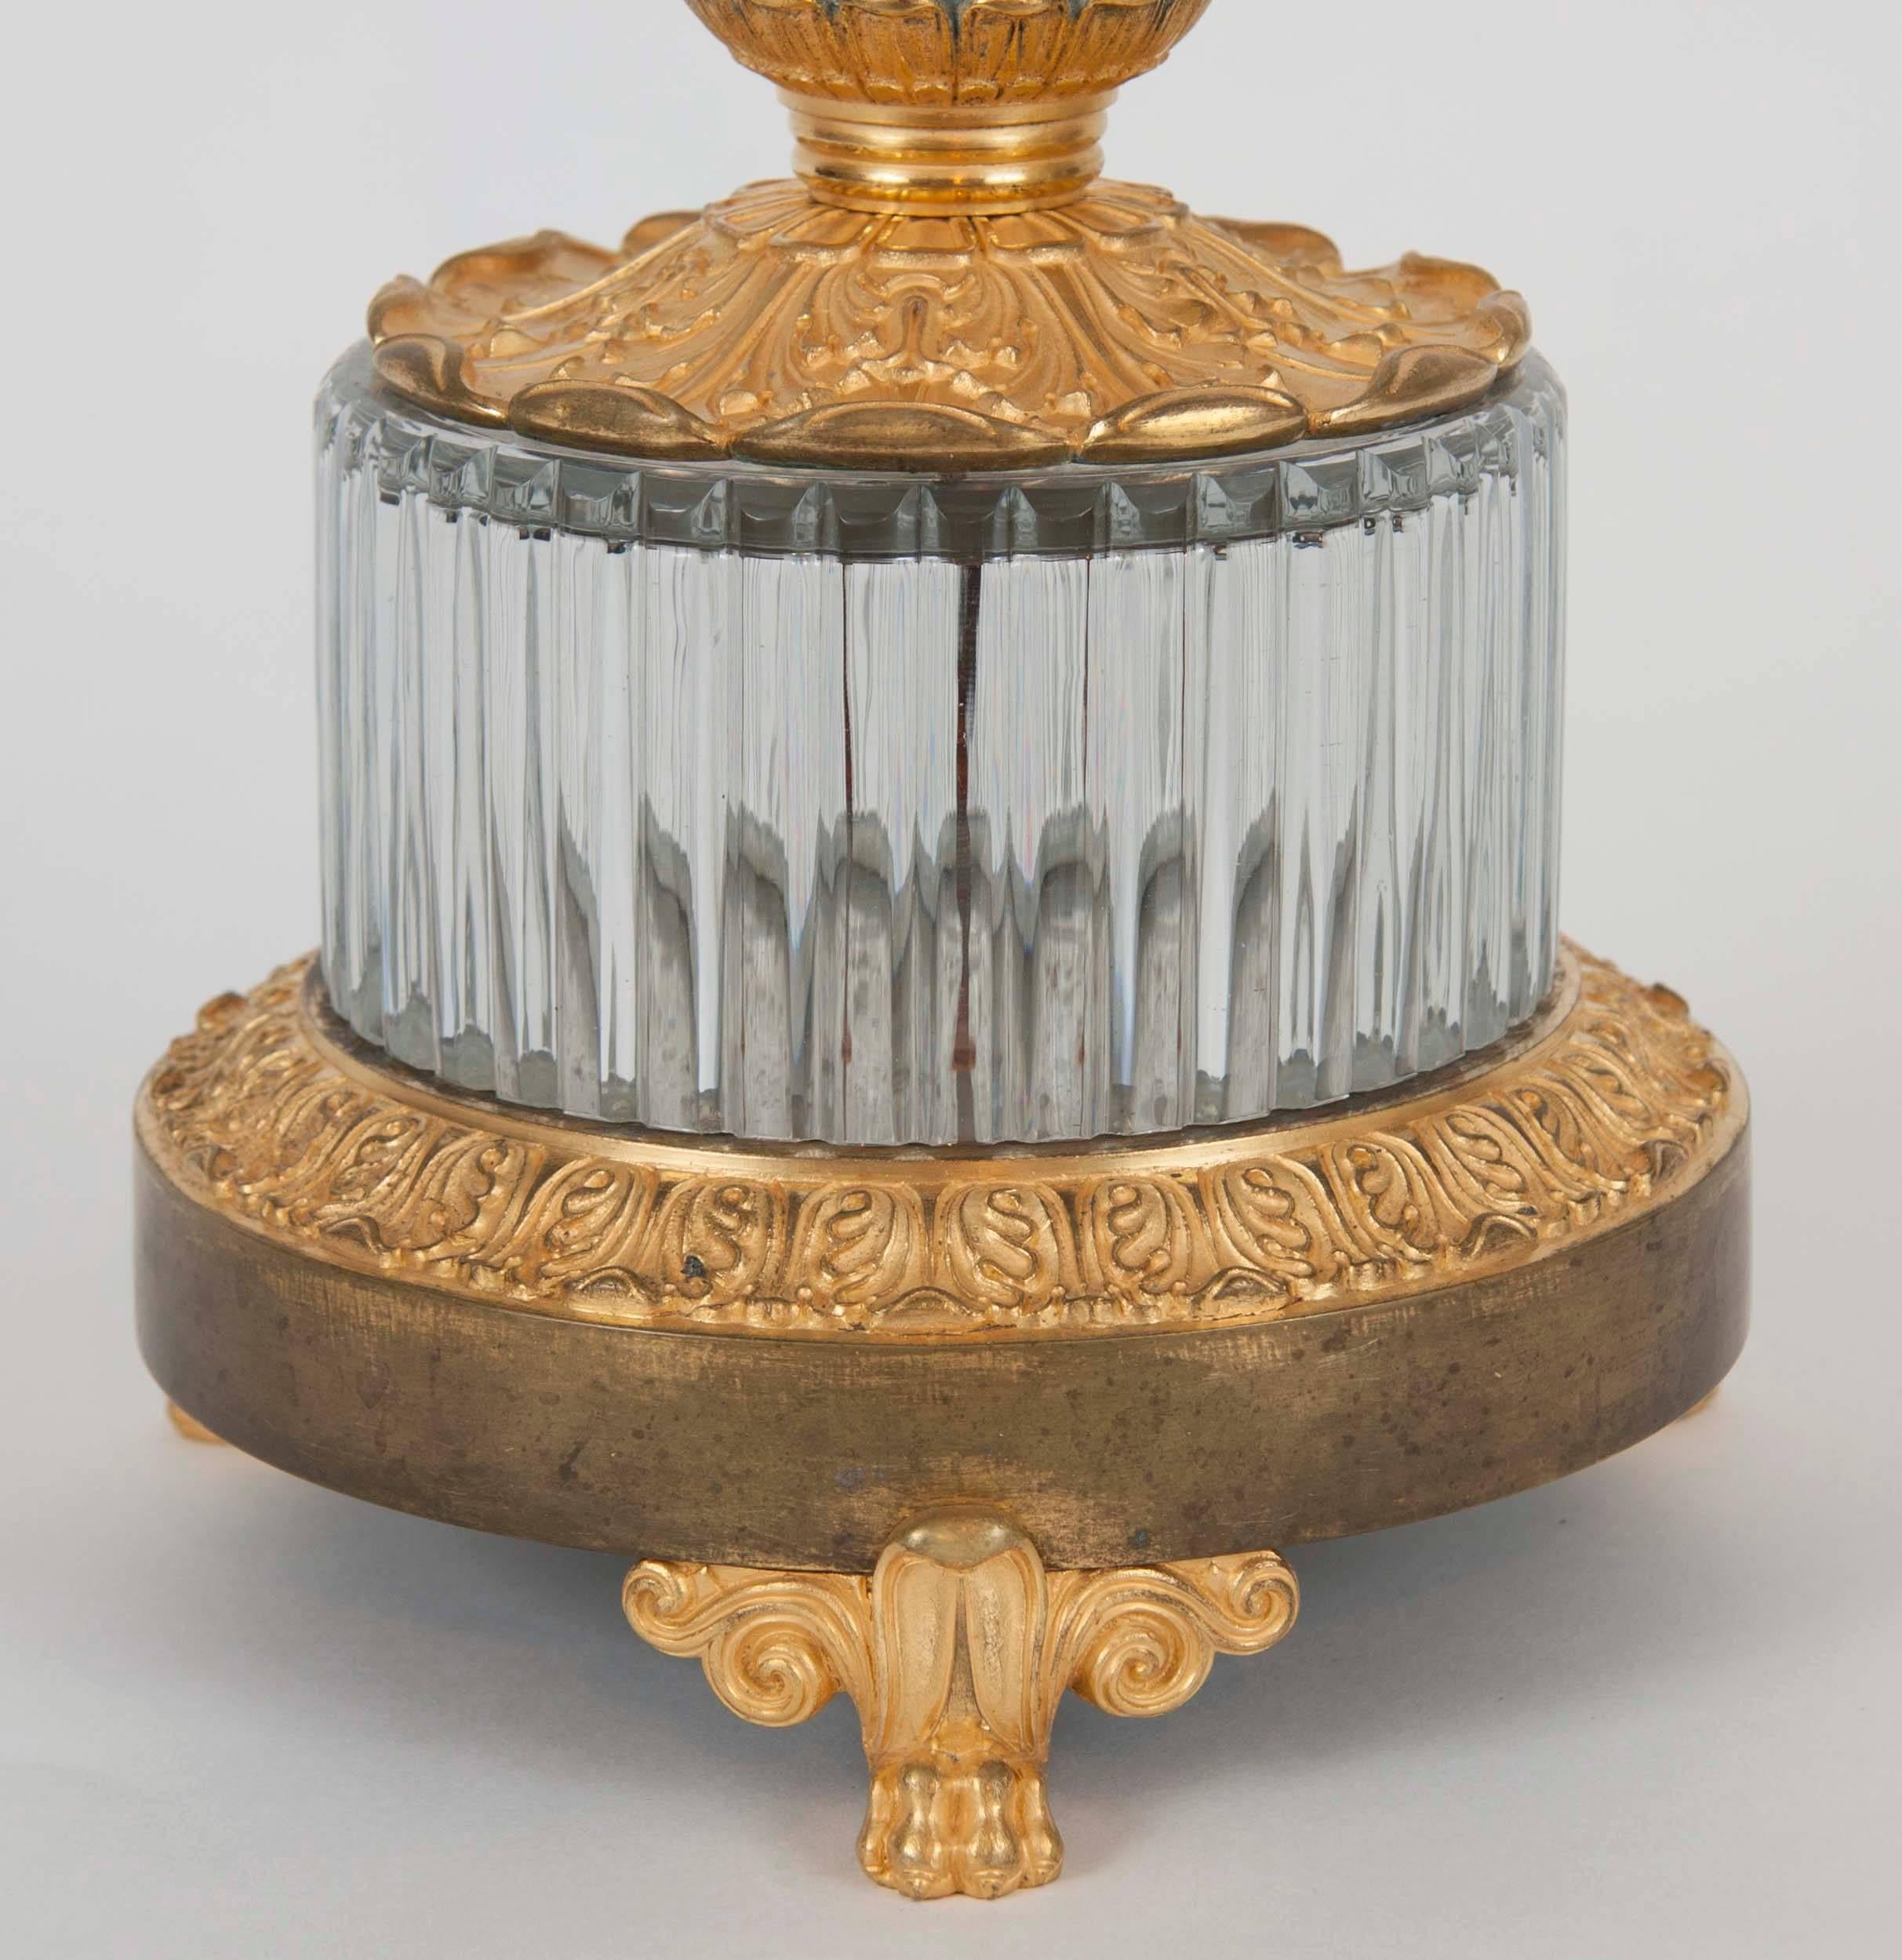 Pièce centrale en verre taillé avec des montures en bronze doré. Fente capillaire dans la cuvette.